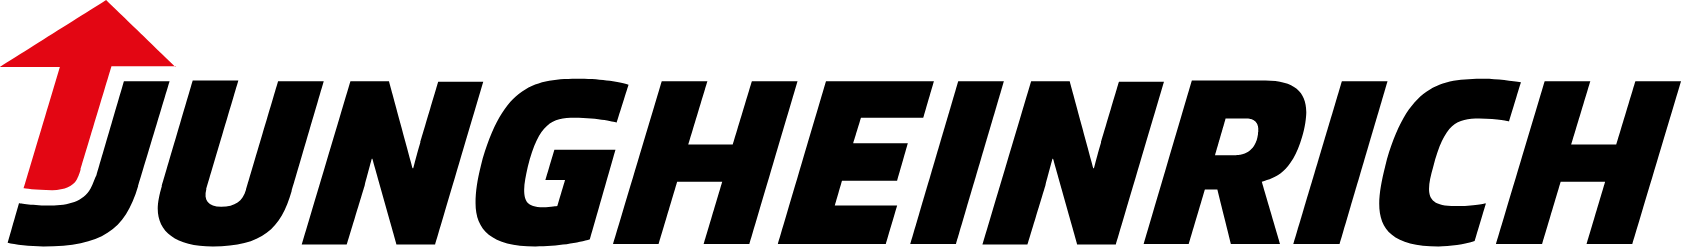 Jungheinrich logo large (transparent PNG)